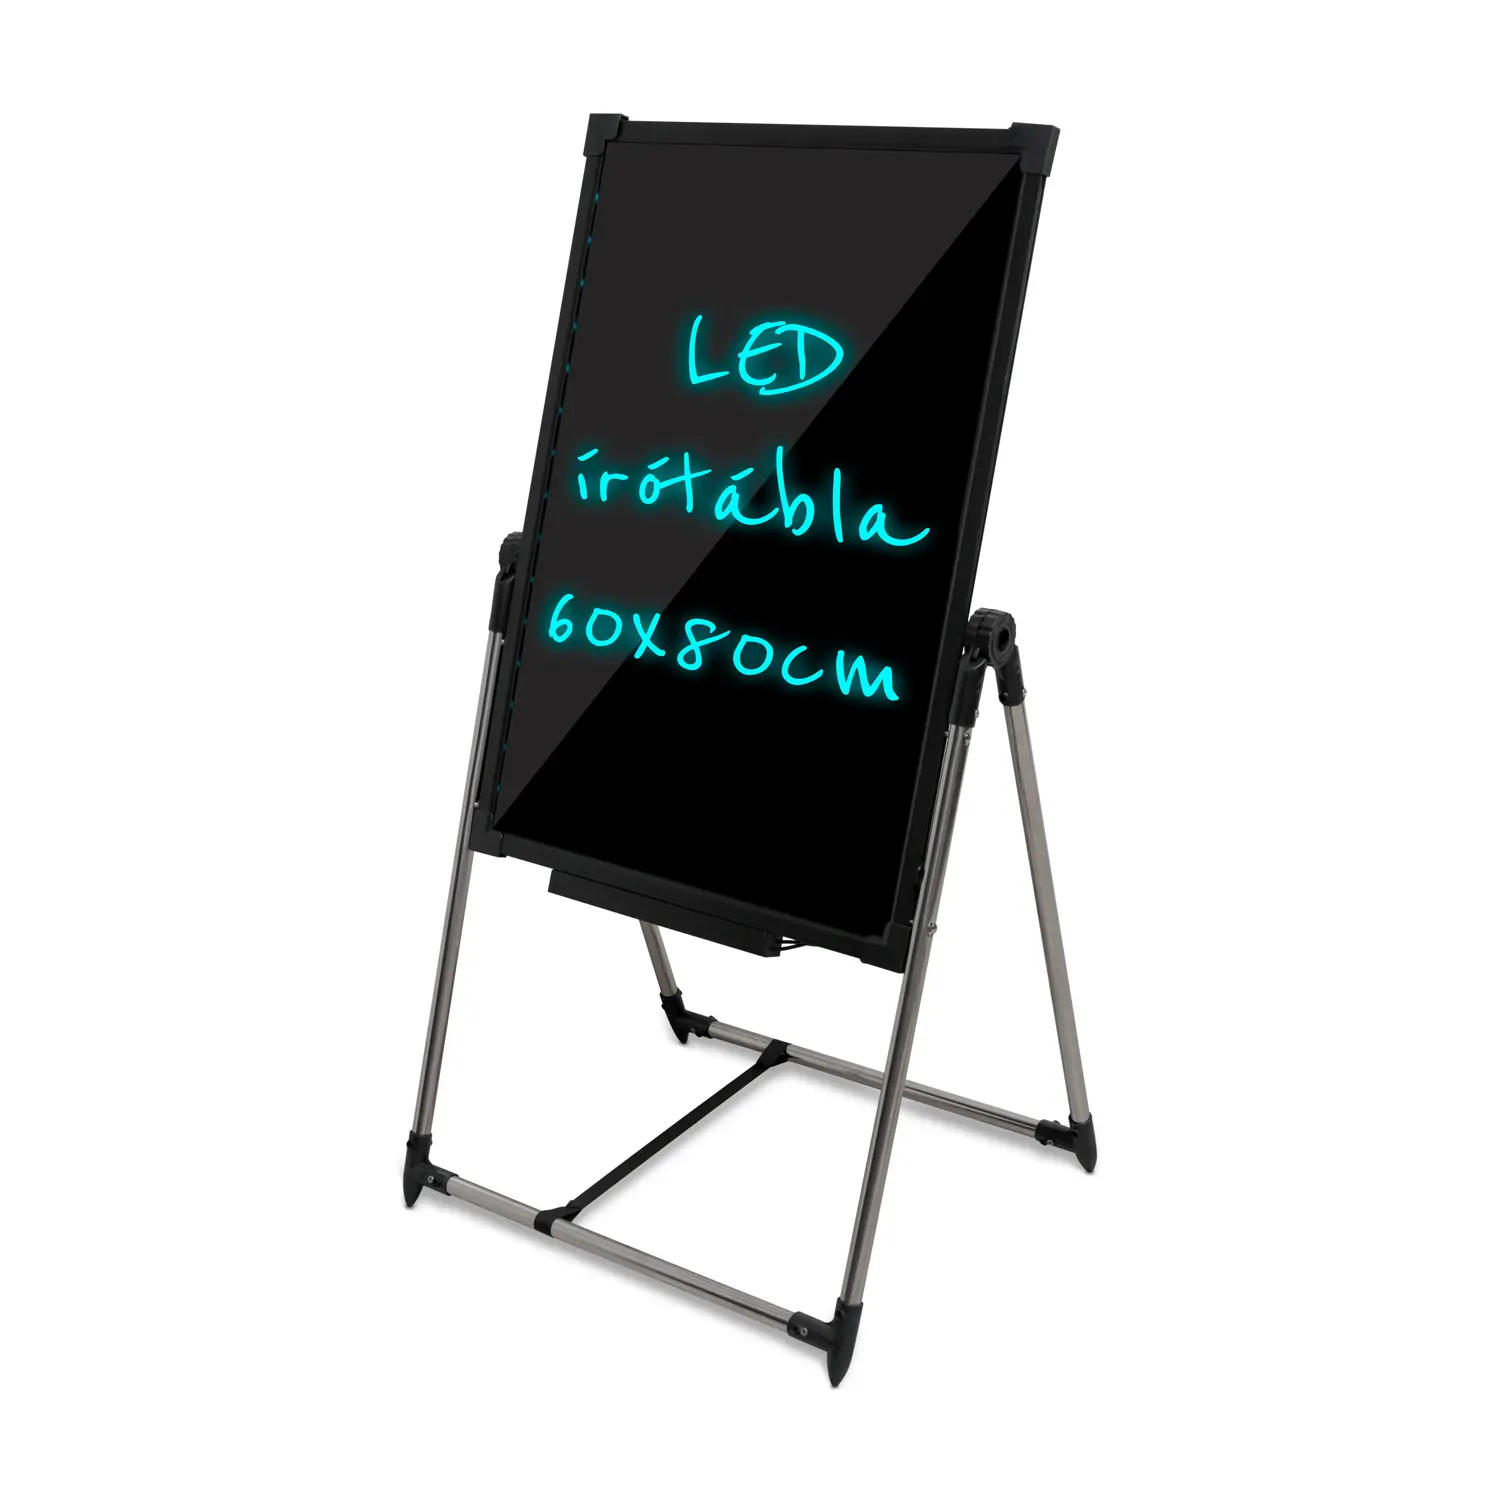 Írható reklámtábla, LED tábla, álló 60x80cm (LED-board-60x80-plug-in)